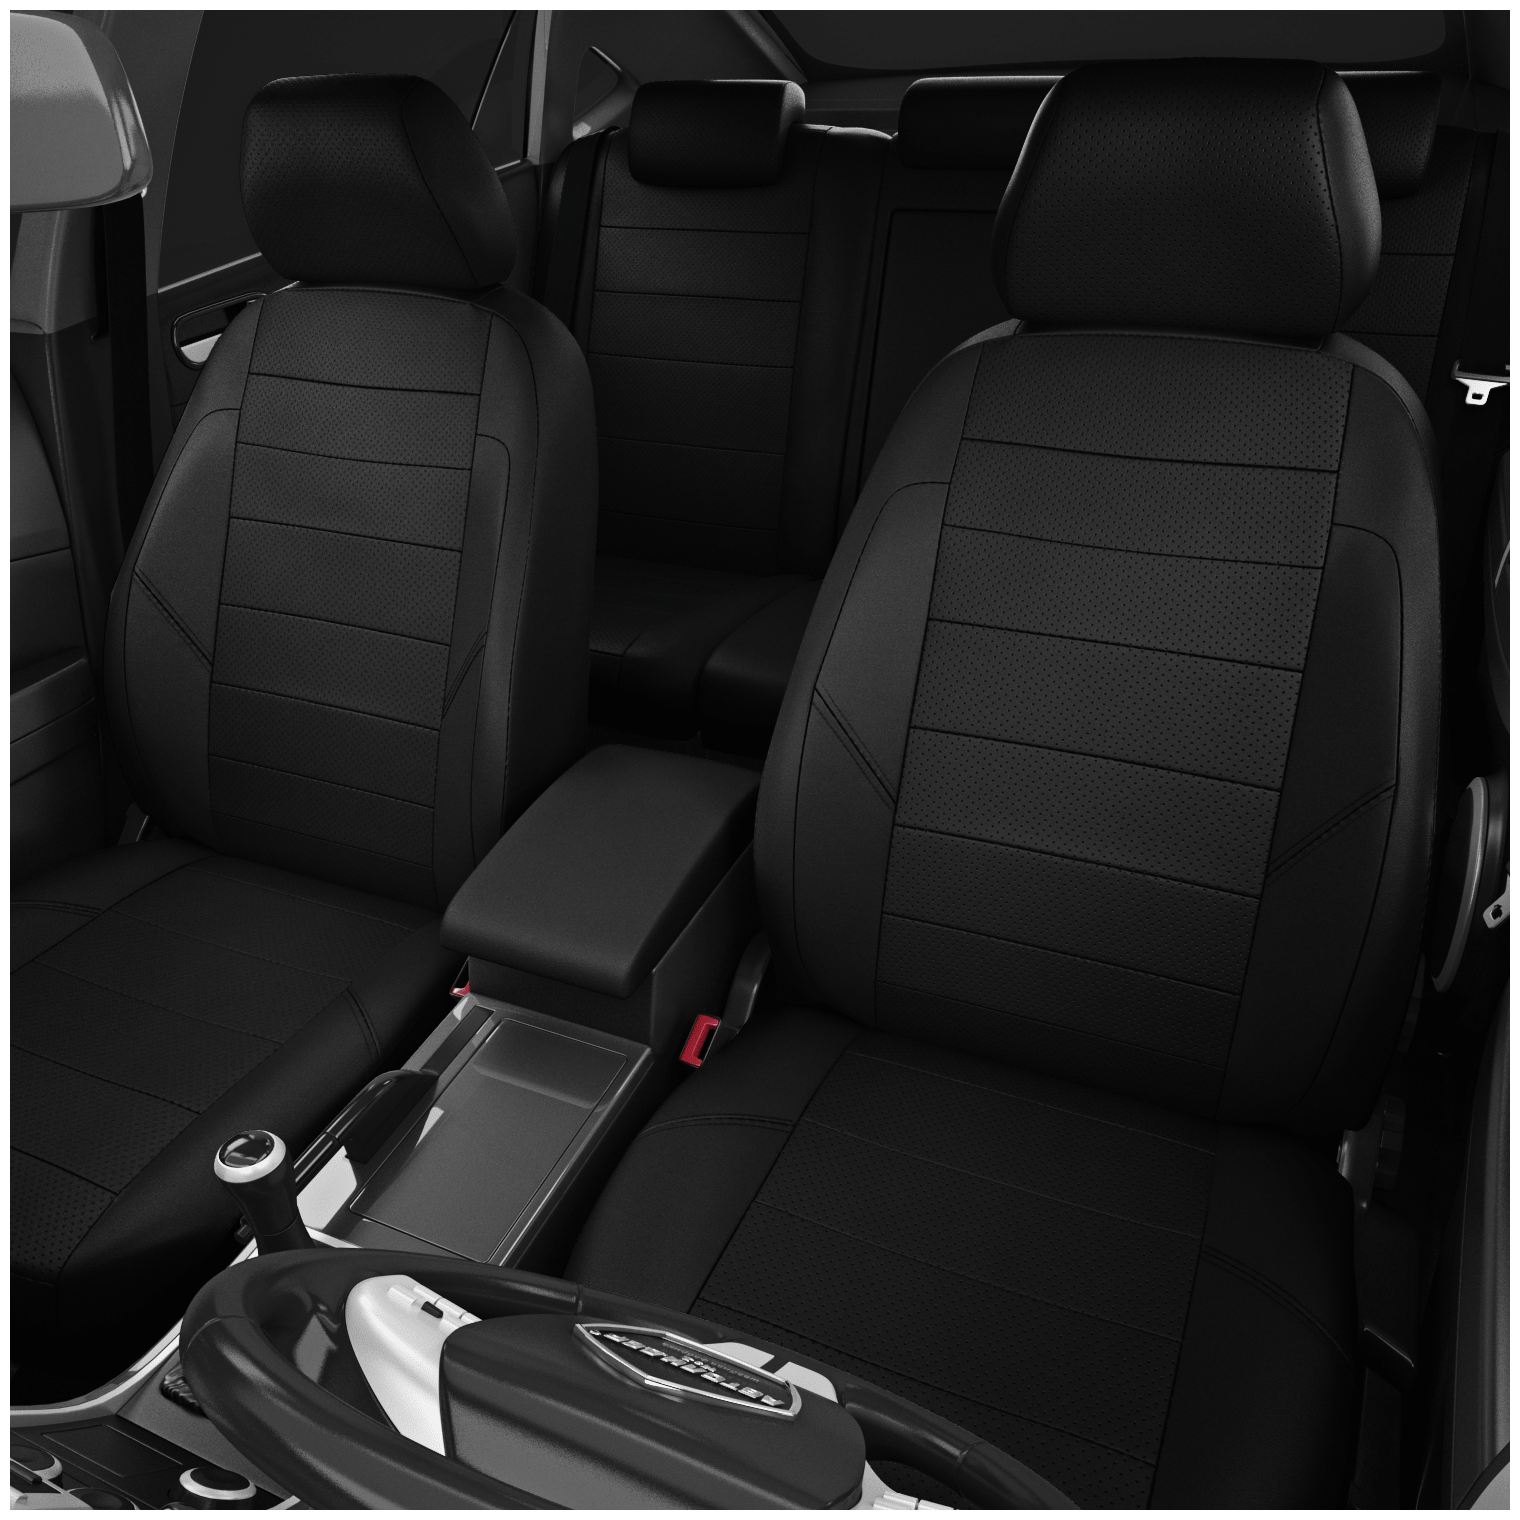 Чехлы на сиденья Toyota Hilux 7 (Тойота Хайлюкс 7) AN10, AN20, AN30 с 2012-2015г. джип-пикап 5 мест чёрный-чёрный - фотография № 2